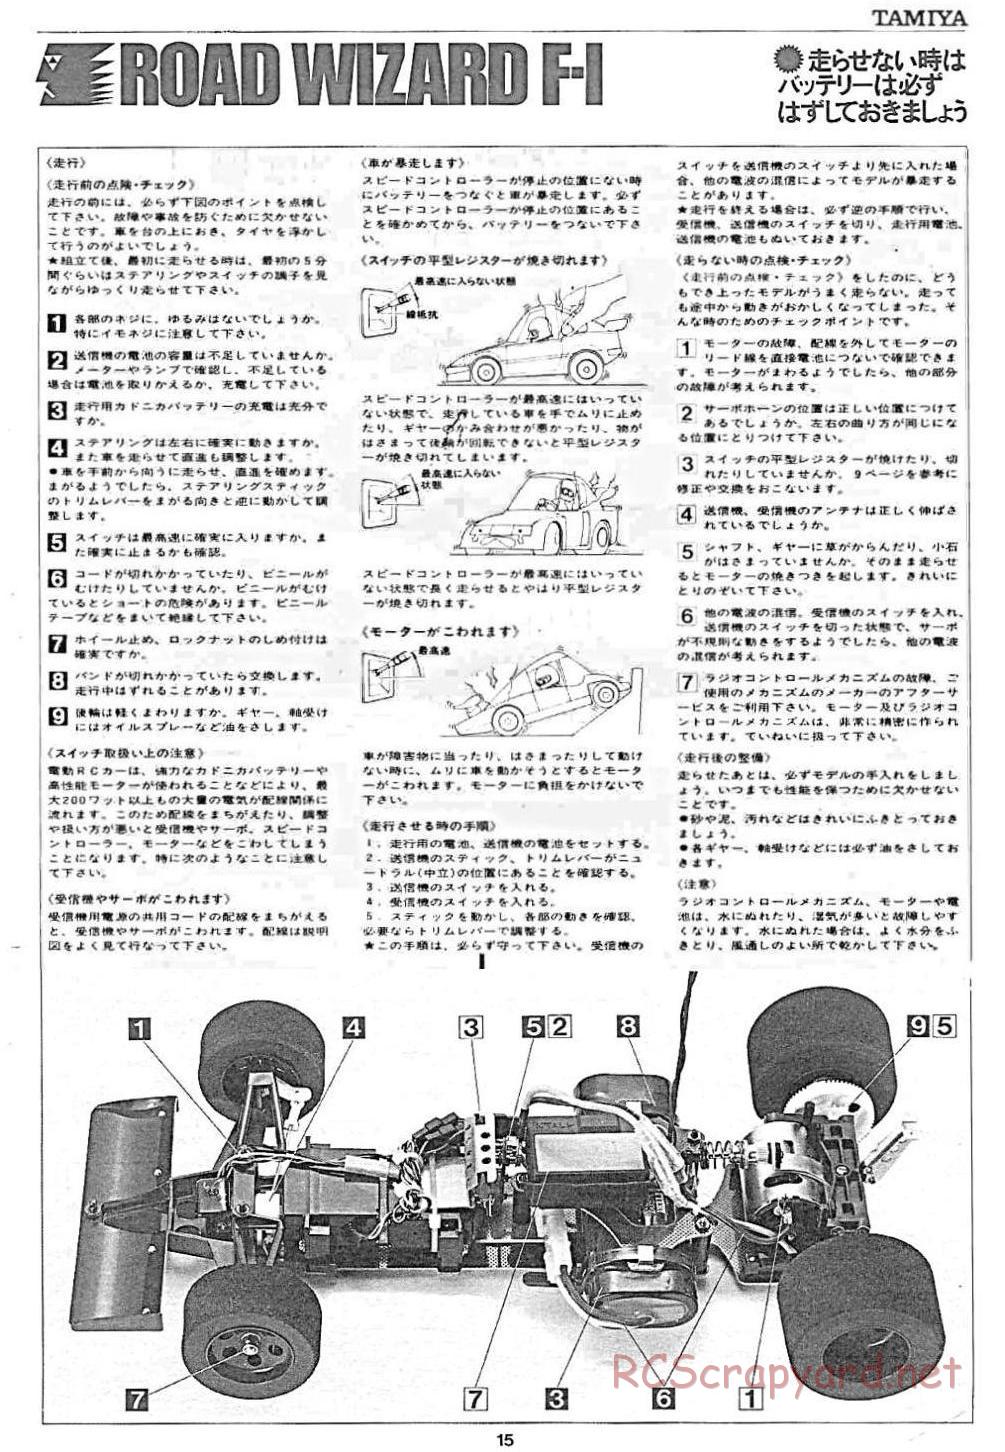 Tamiya - Road Wizard F-1 - 58053 - Manual - Page 15